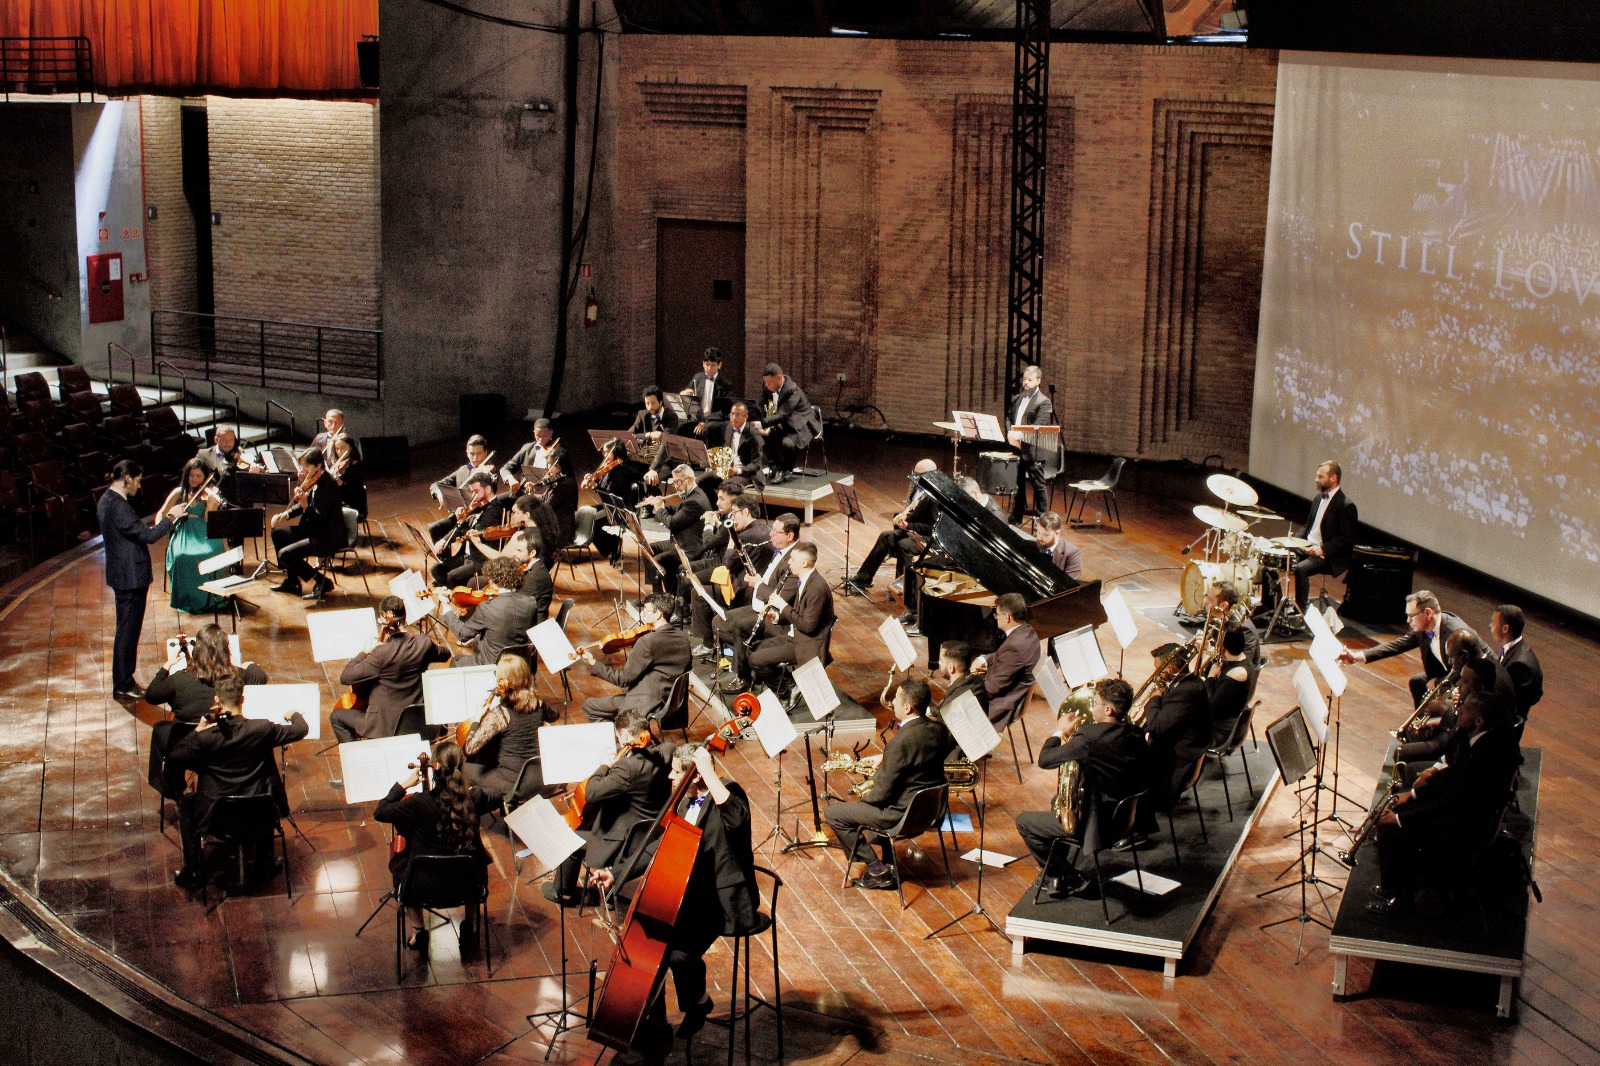 A imagem mostra um maestro regendo uma orquestra composta por diversos tipos de instrumentos.